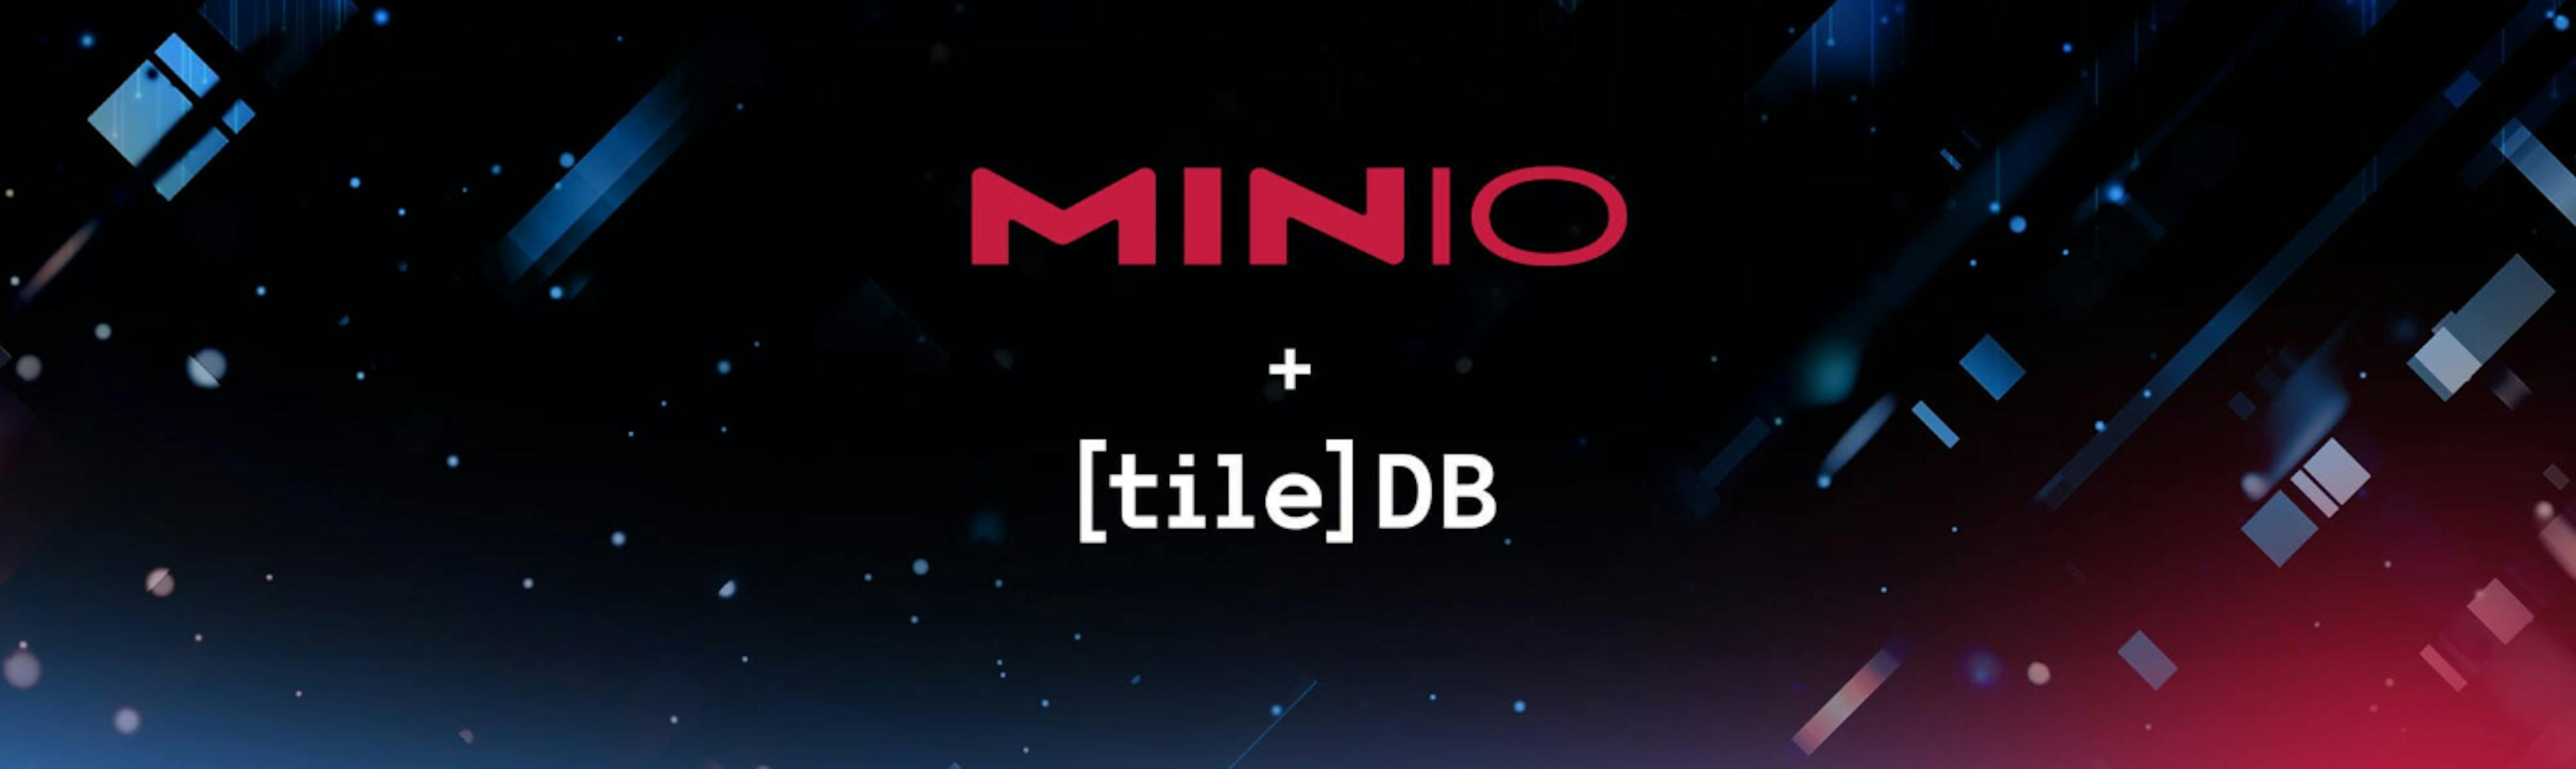 /fr/suralimenter-le-moteur-Tiledb-avec-Minio feature image